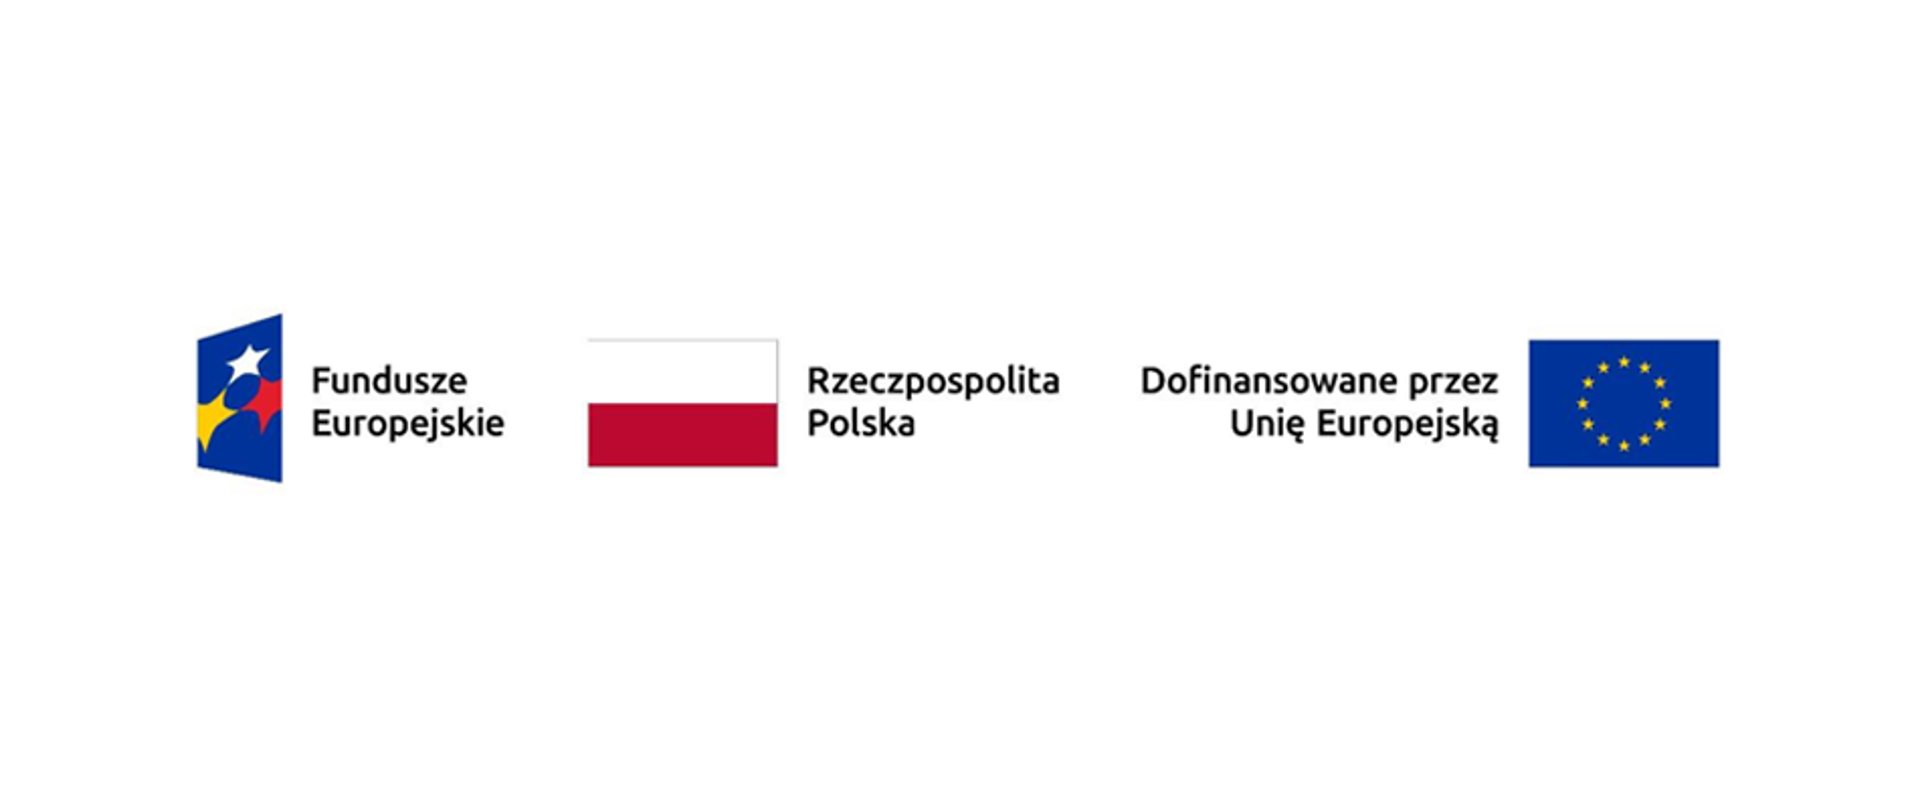 Ciąg znaków: Fundusze Europejskie, Rzeczpospolita Polska, Dofinansowane przez Unię Europejską.